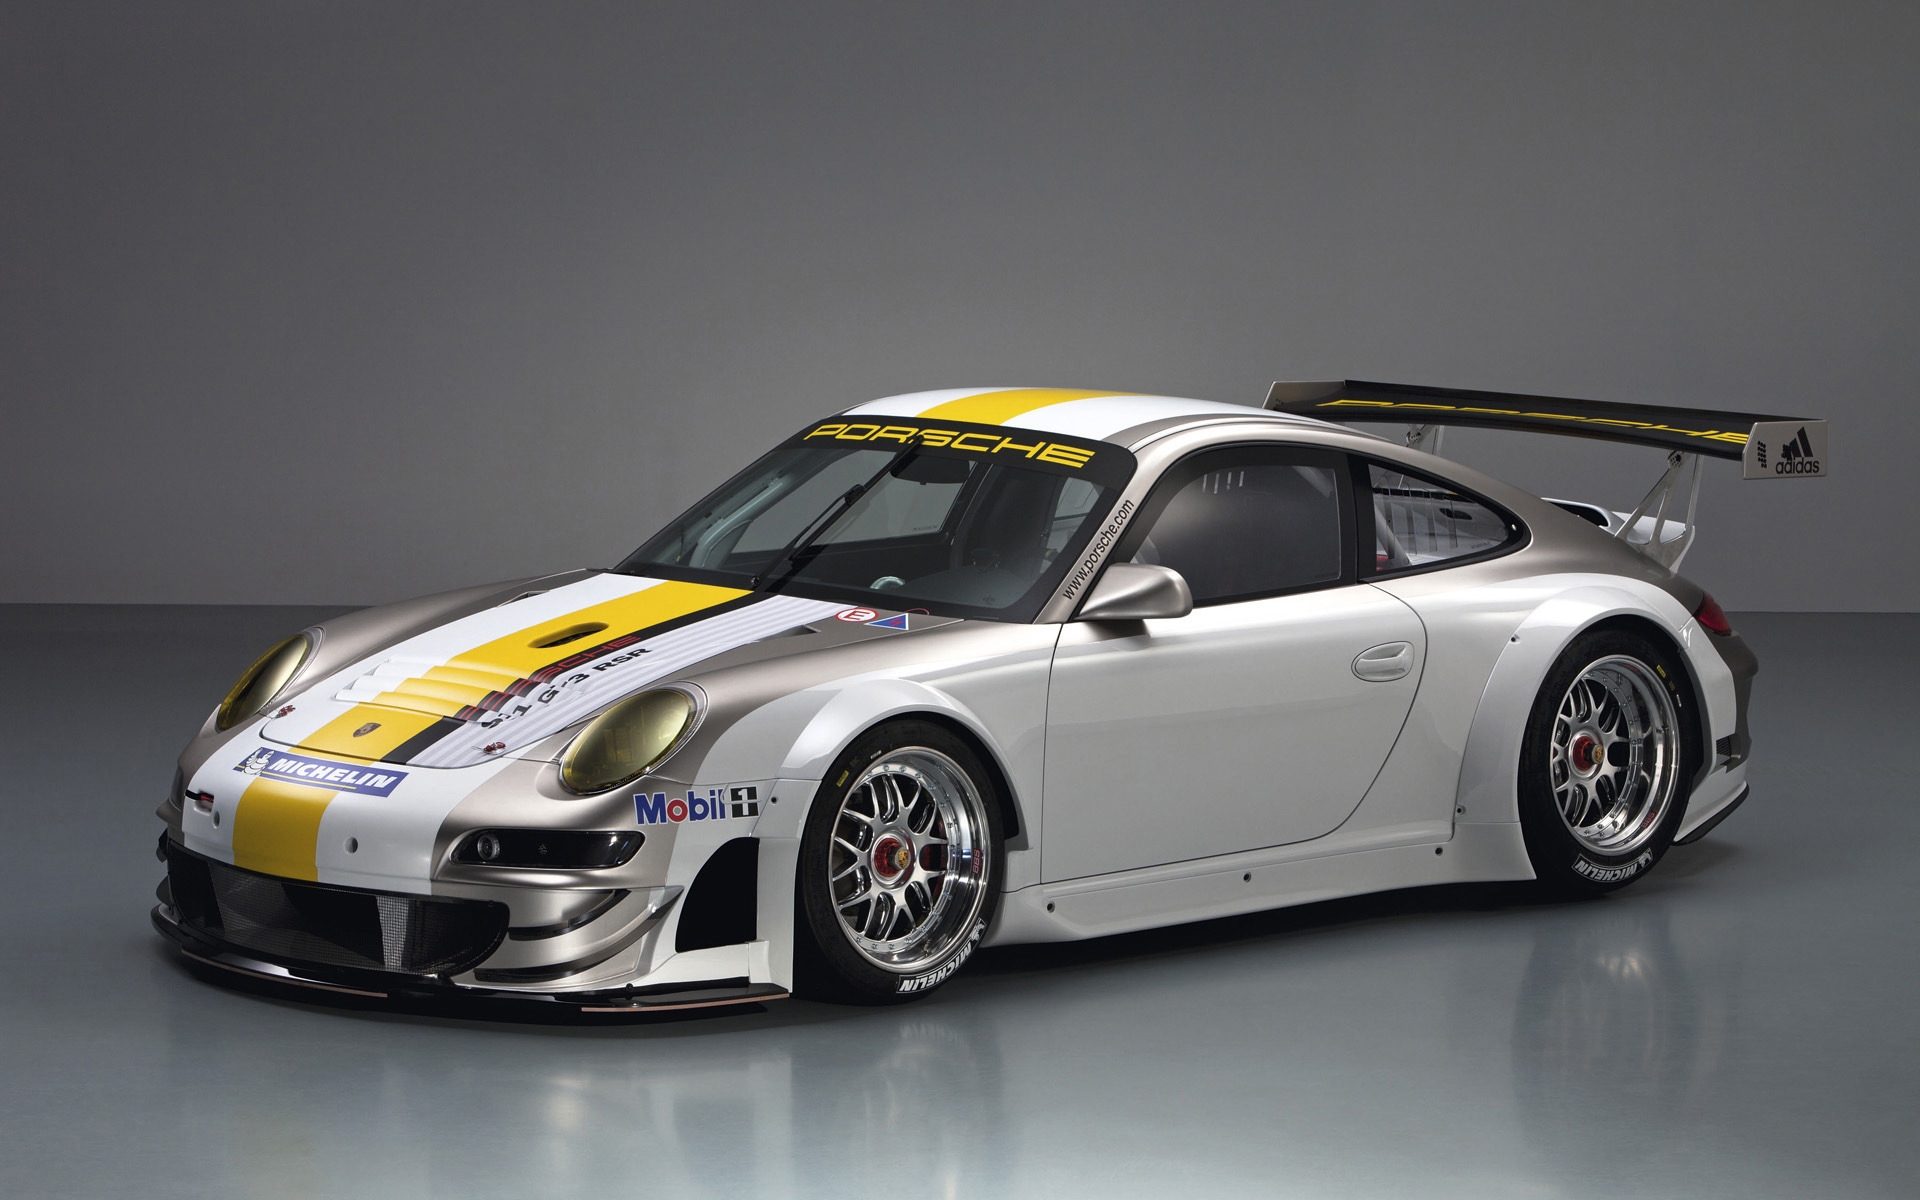 Porsche 911 GT3 RSR Studio for 1920 x 1200 widescreen resolution